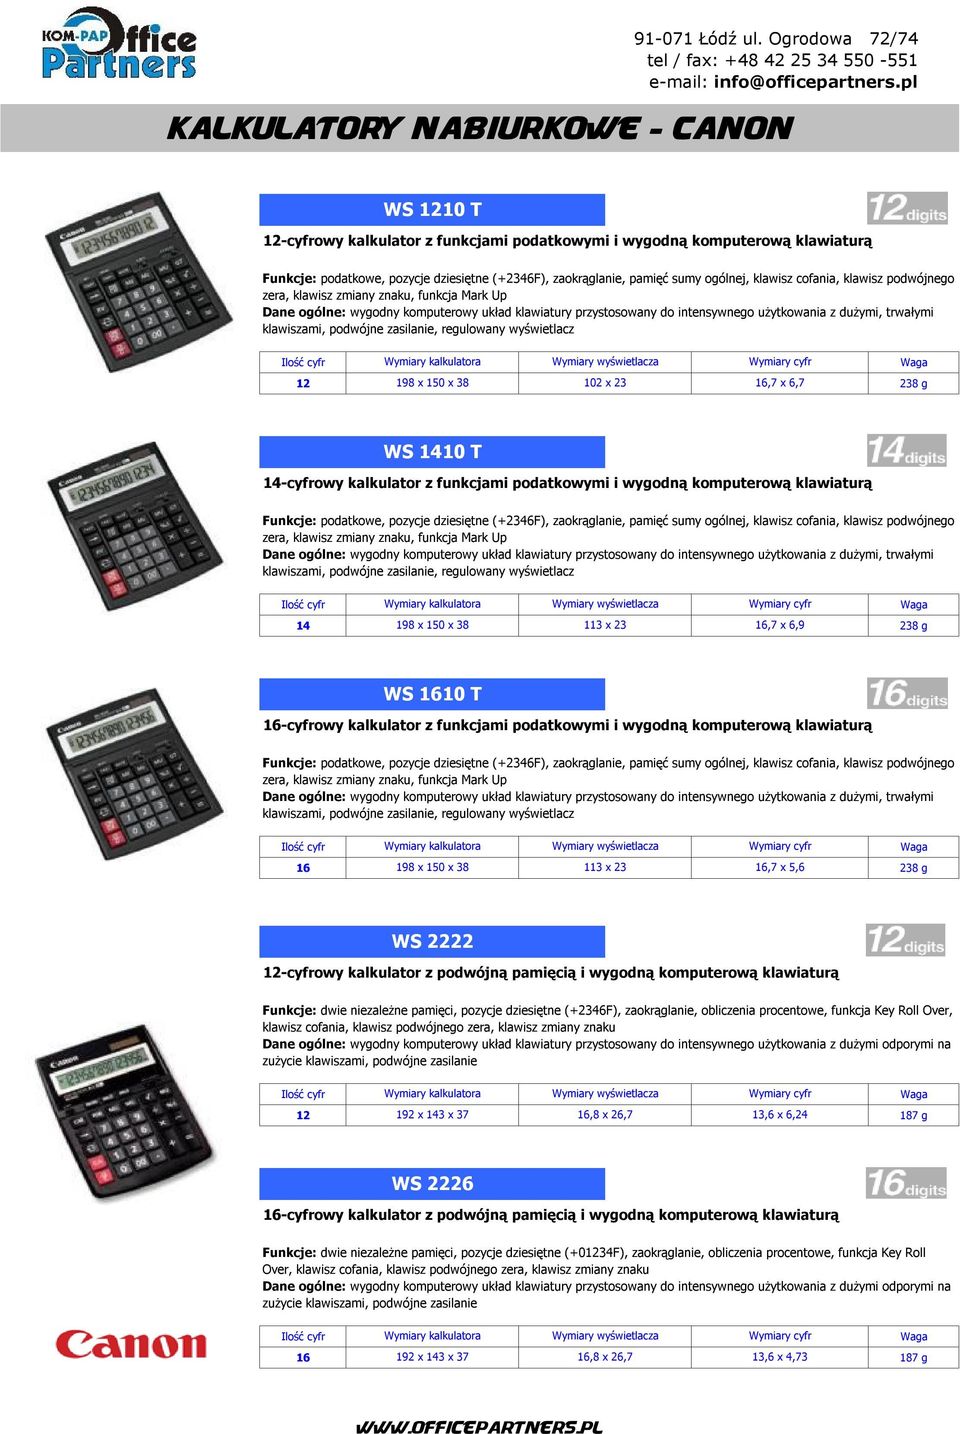 klawiszami, podwójne zasilanie, regulowany wyświetlacz 12 198 x 150 x 38 102 x 23 16,7 x 6,7 238 g WS 1410 T 14-cyfrowy kalkulator z funkcjami podatkowymi i wygodną komputerową klawiaturą Funkcje: